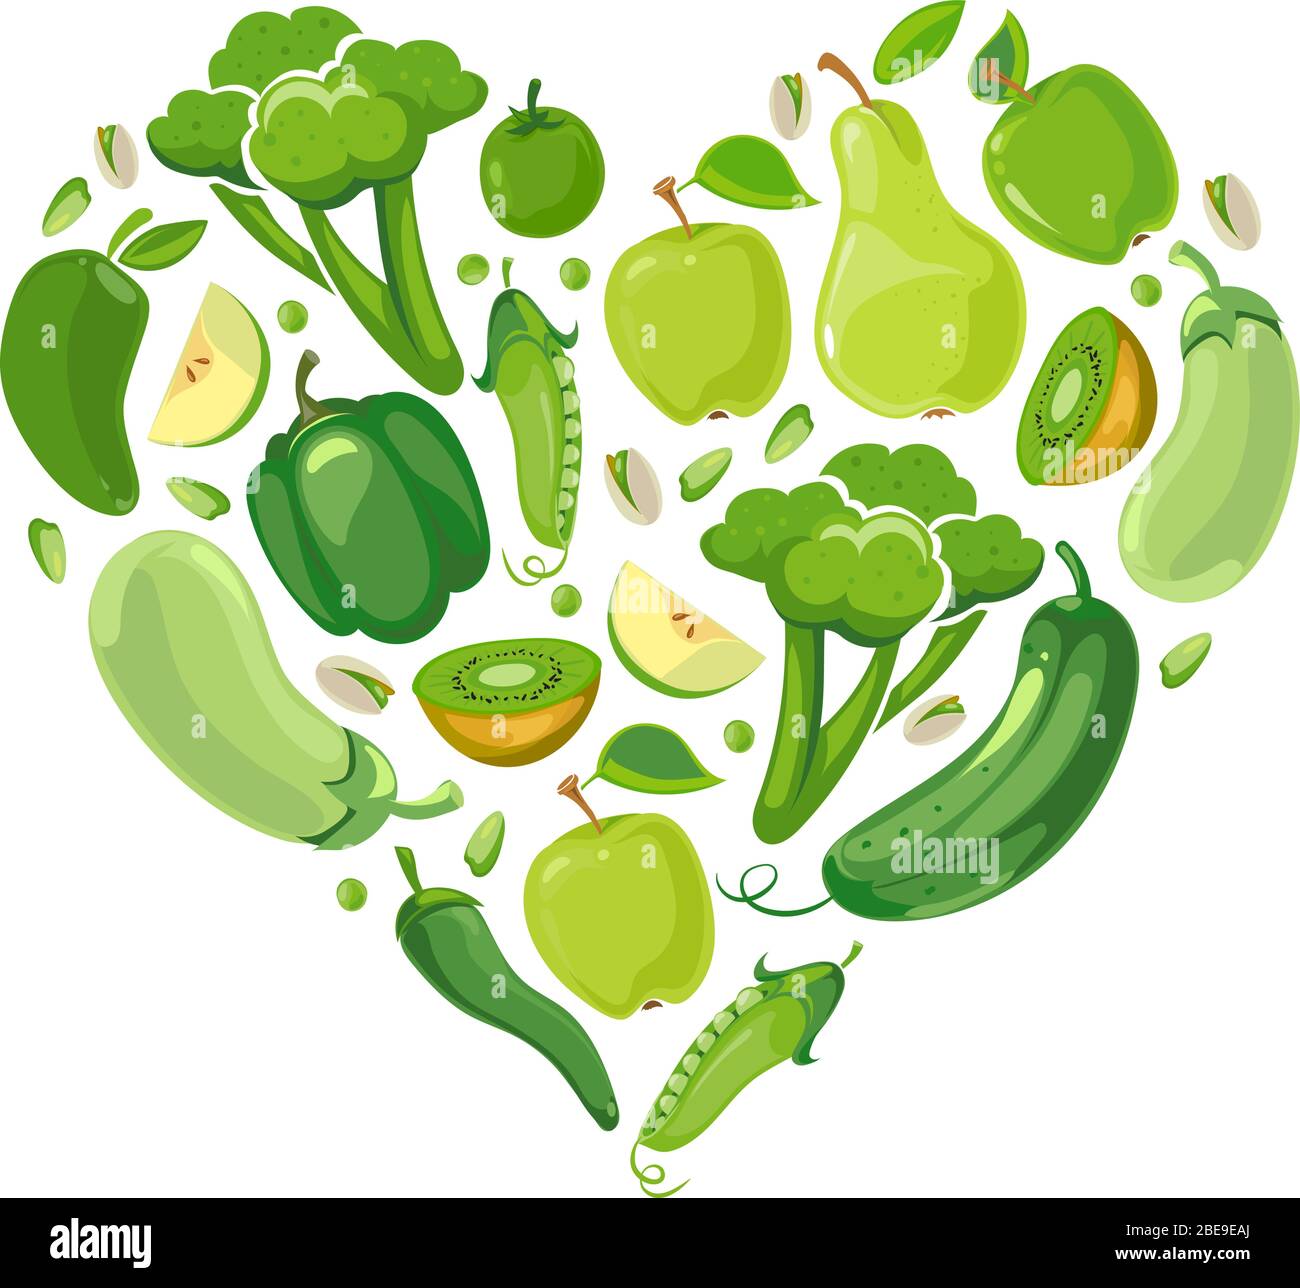 Herz mit grünen Pflanzen und Früchten. Grüne rohe Bio-Lebensmittel in Form Herz. Vektorgrafik Stock Vektor